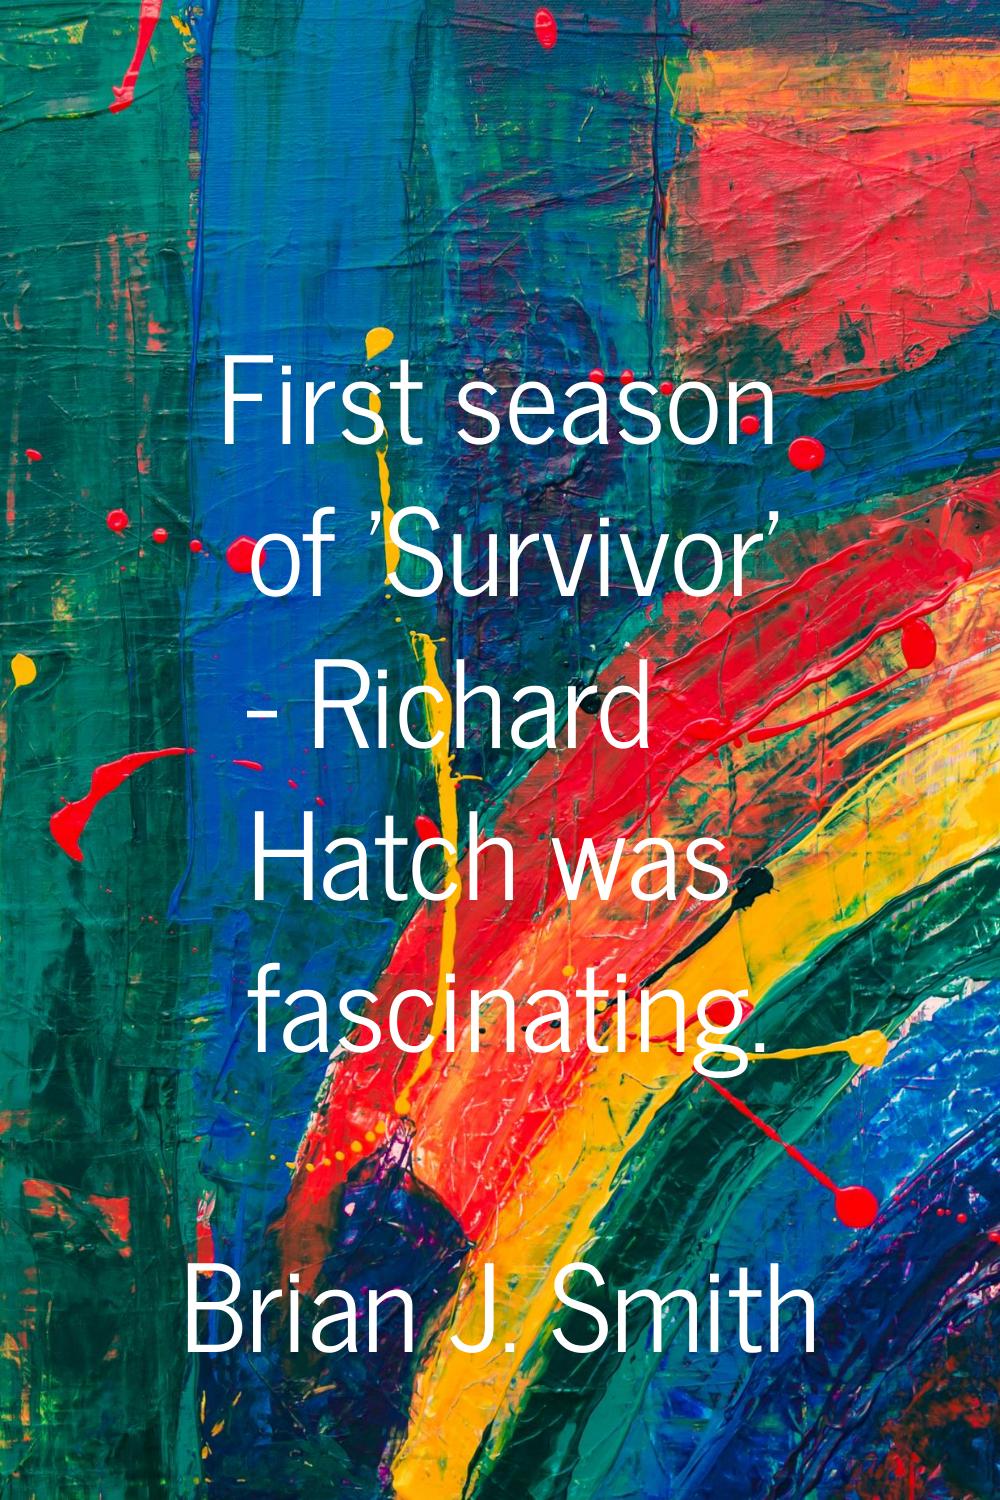 First season of 'Survivor' - Richard Hatch was fascinating.